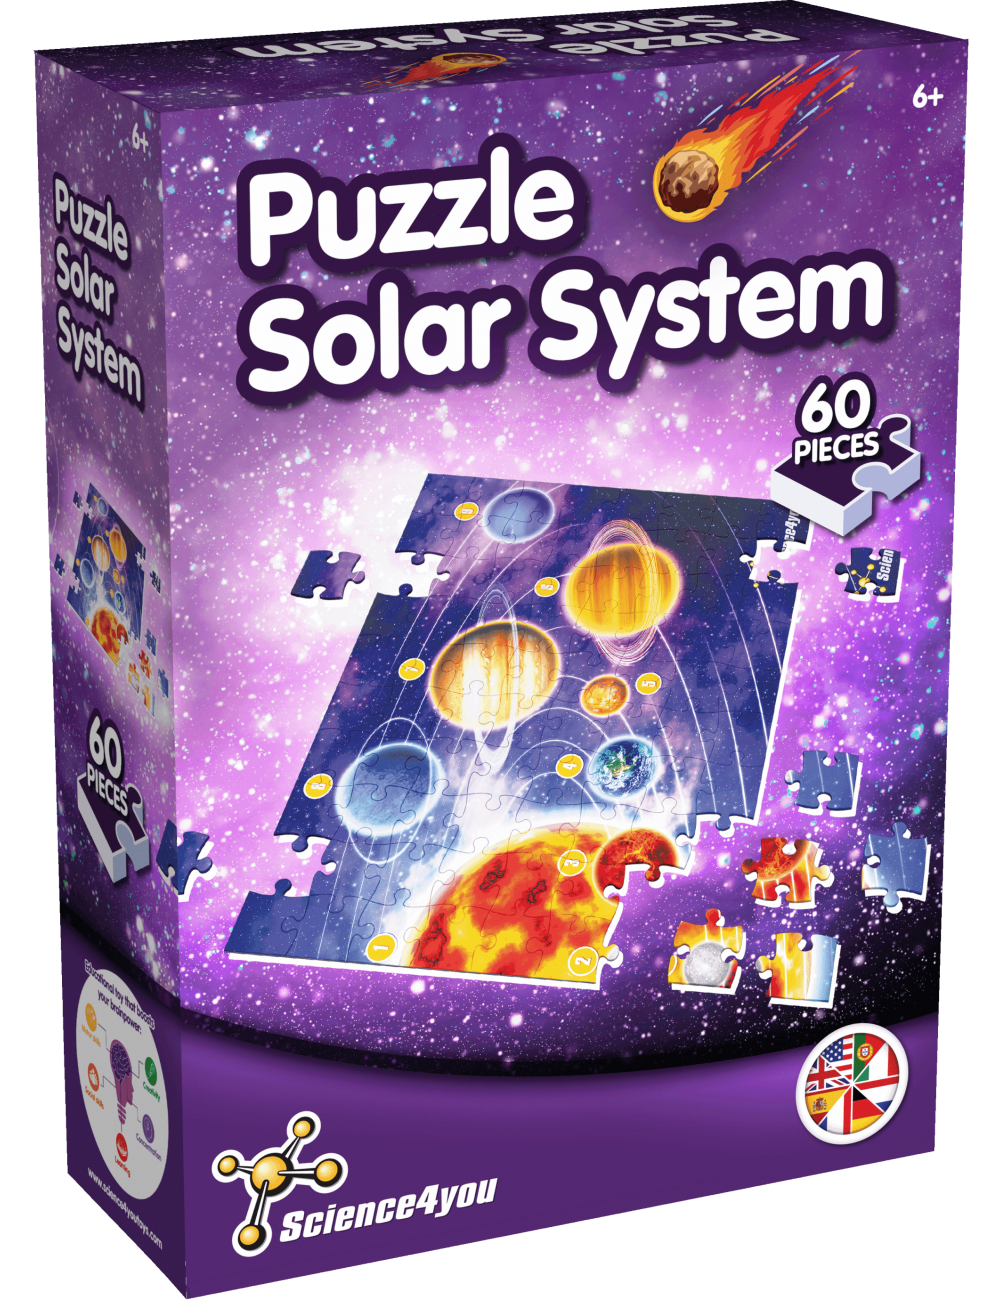 Puzzle Infantil - Sistema Solar